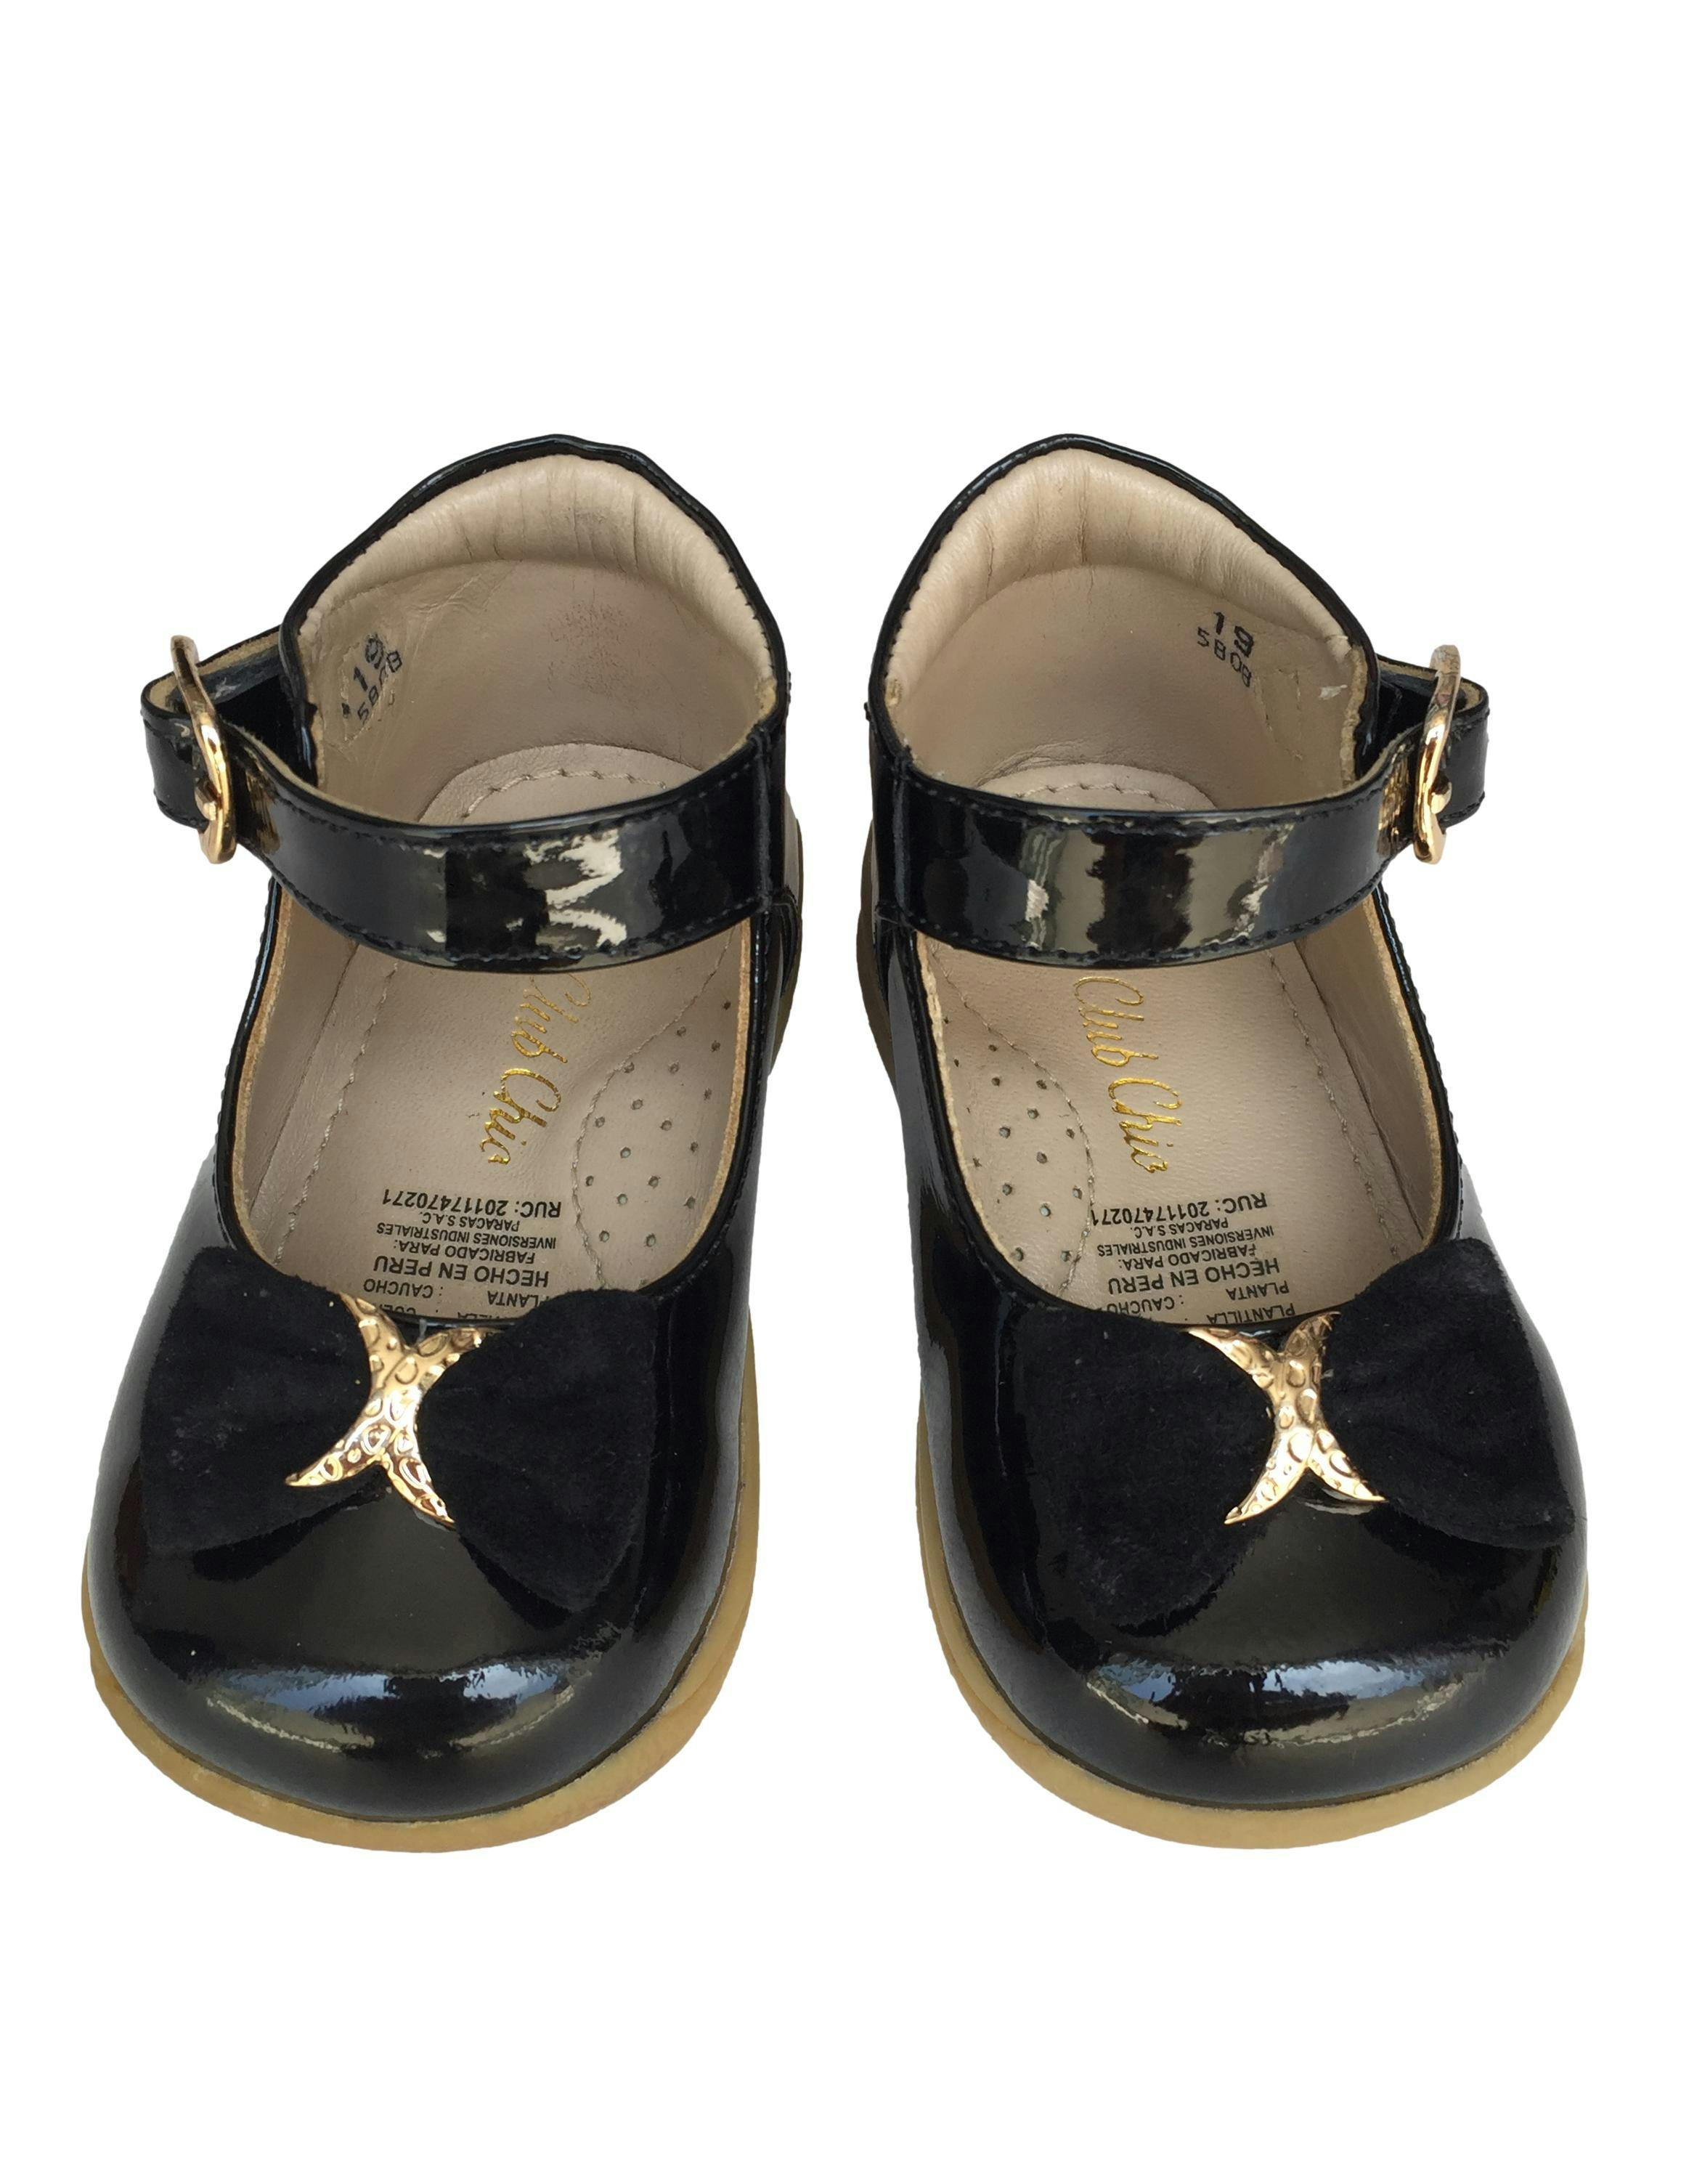 Zapatos negros de cuero charol con correa y lazo de gamuza. Precio original S/ 179